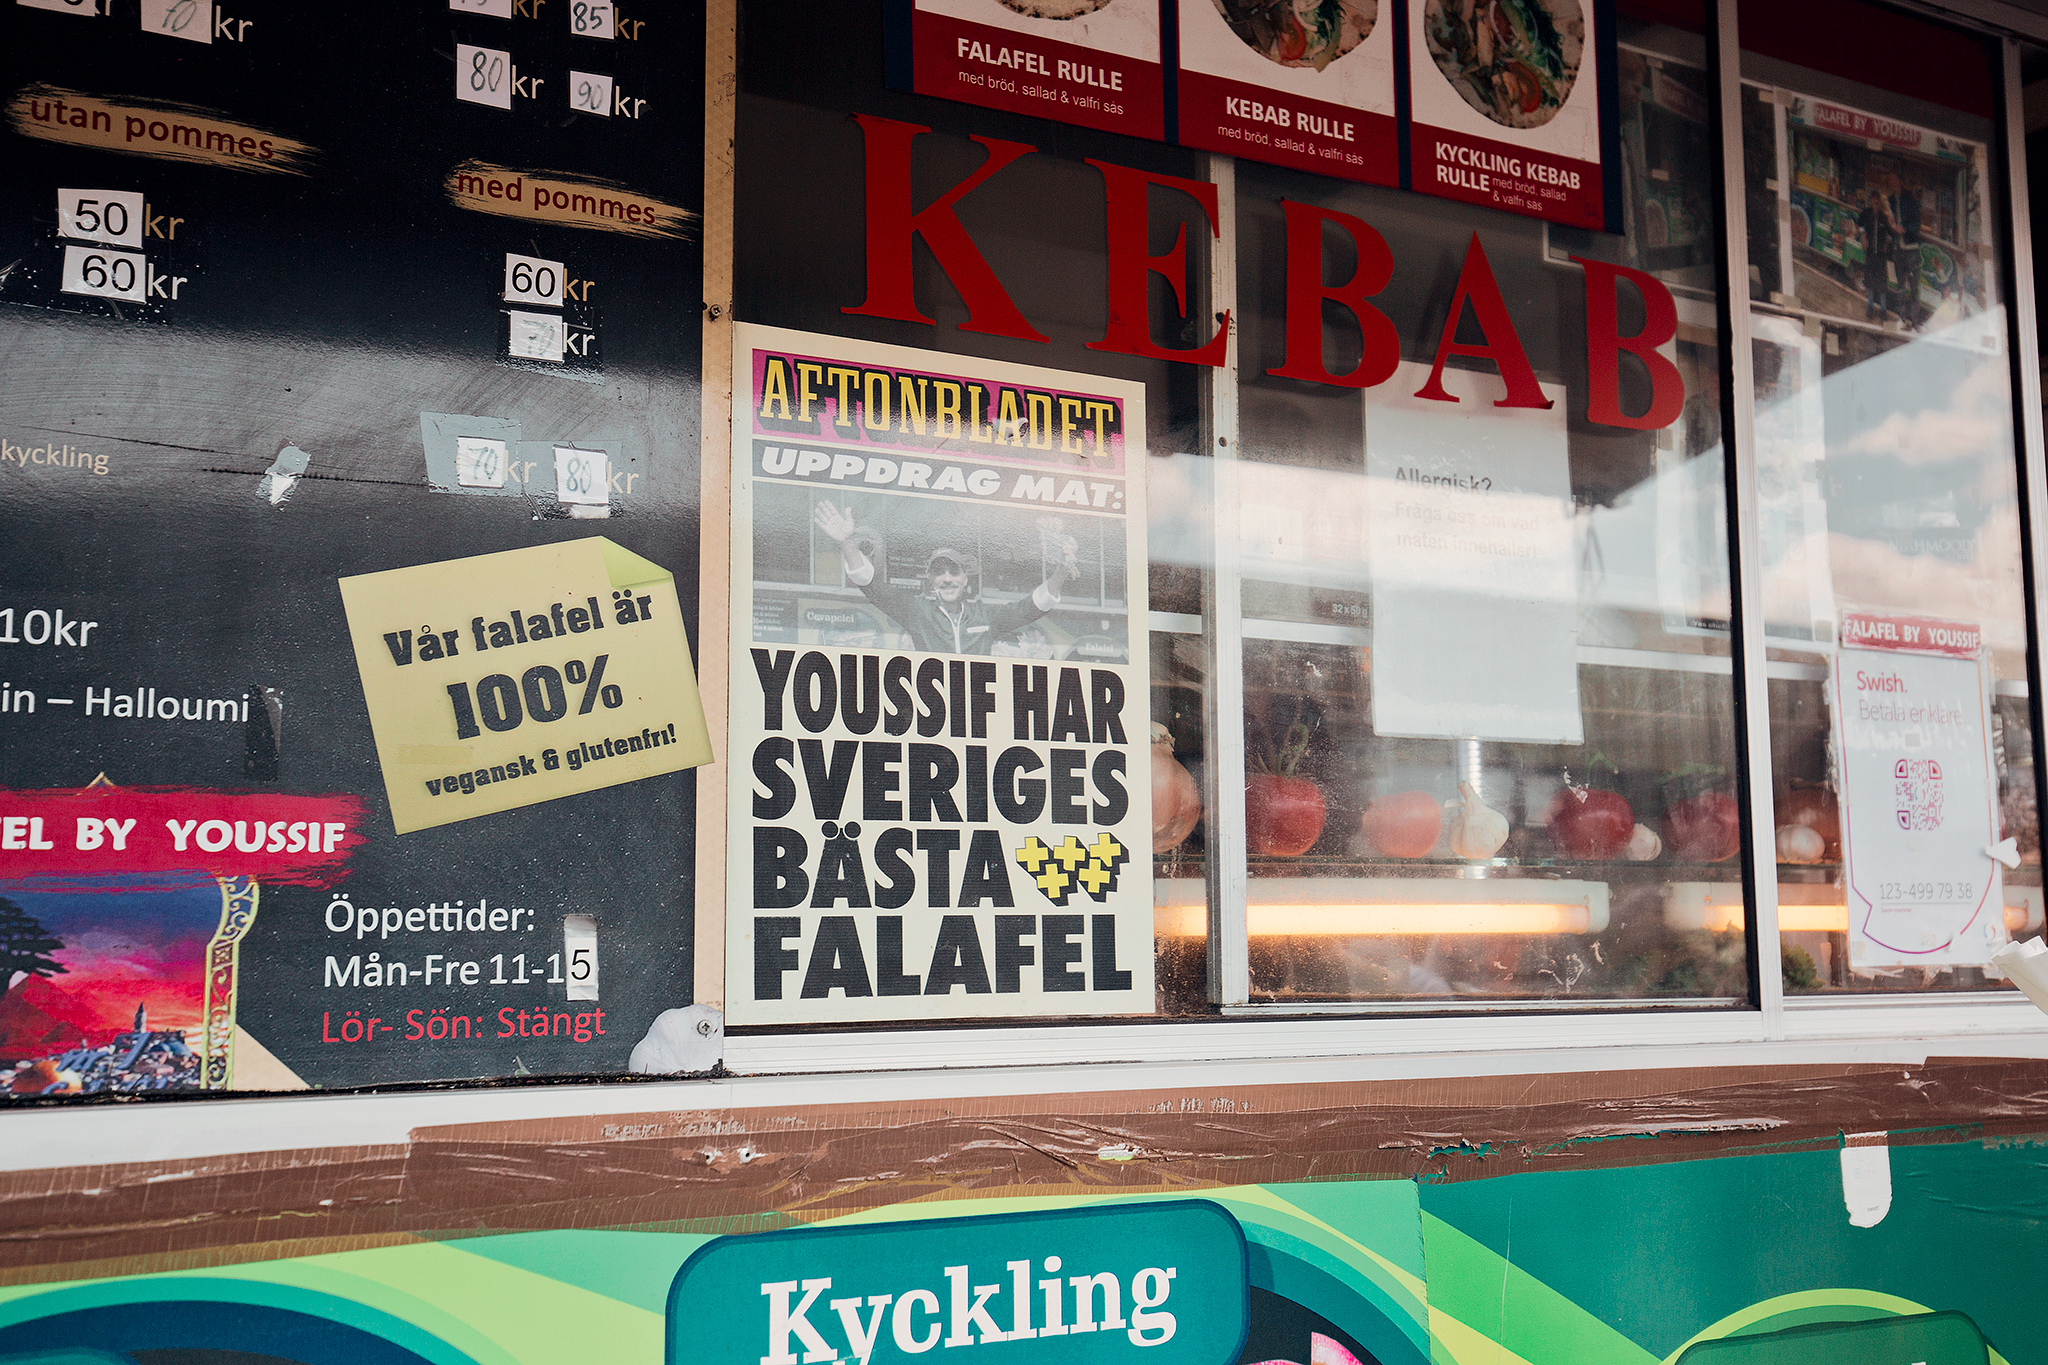 Sveriges bästa falafel - Falafel by Youssif​